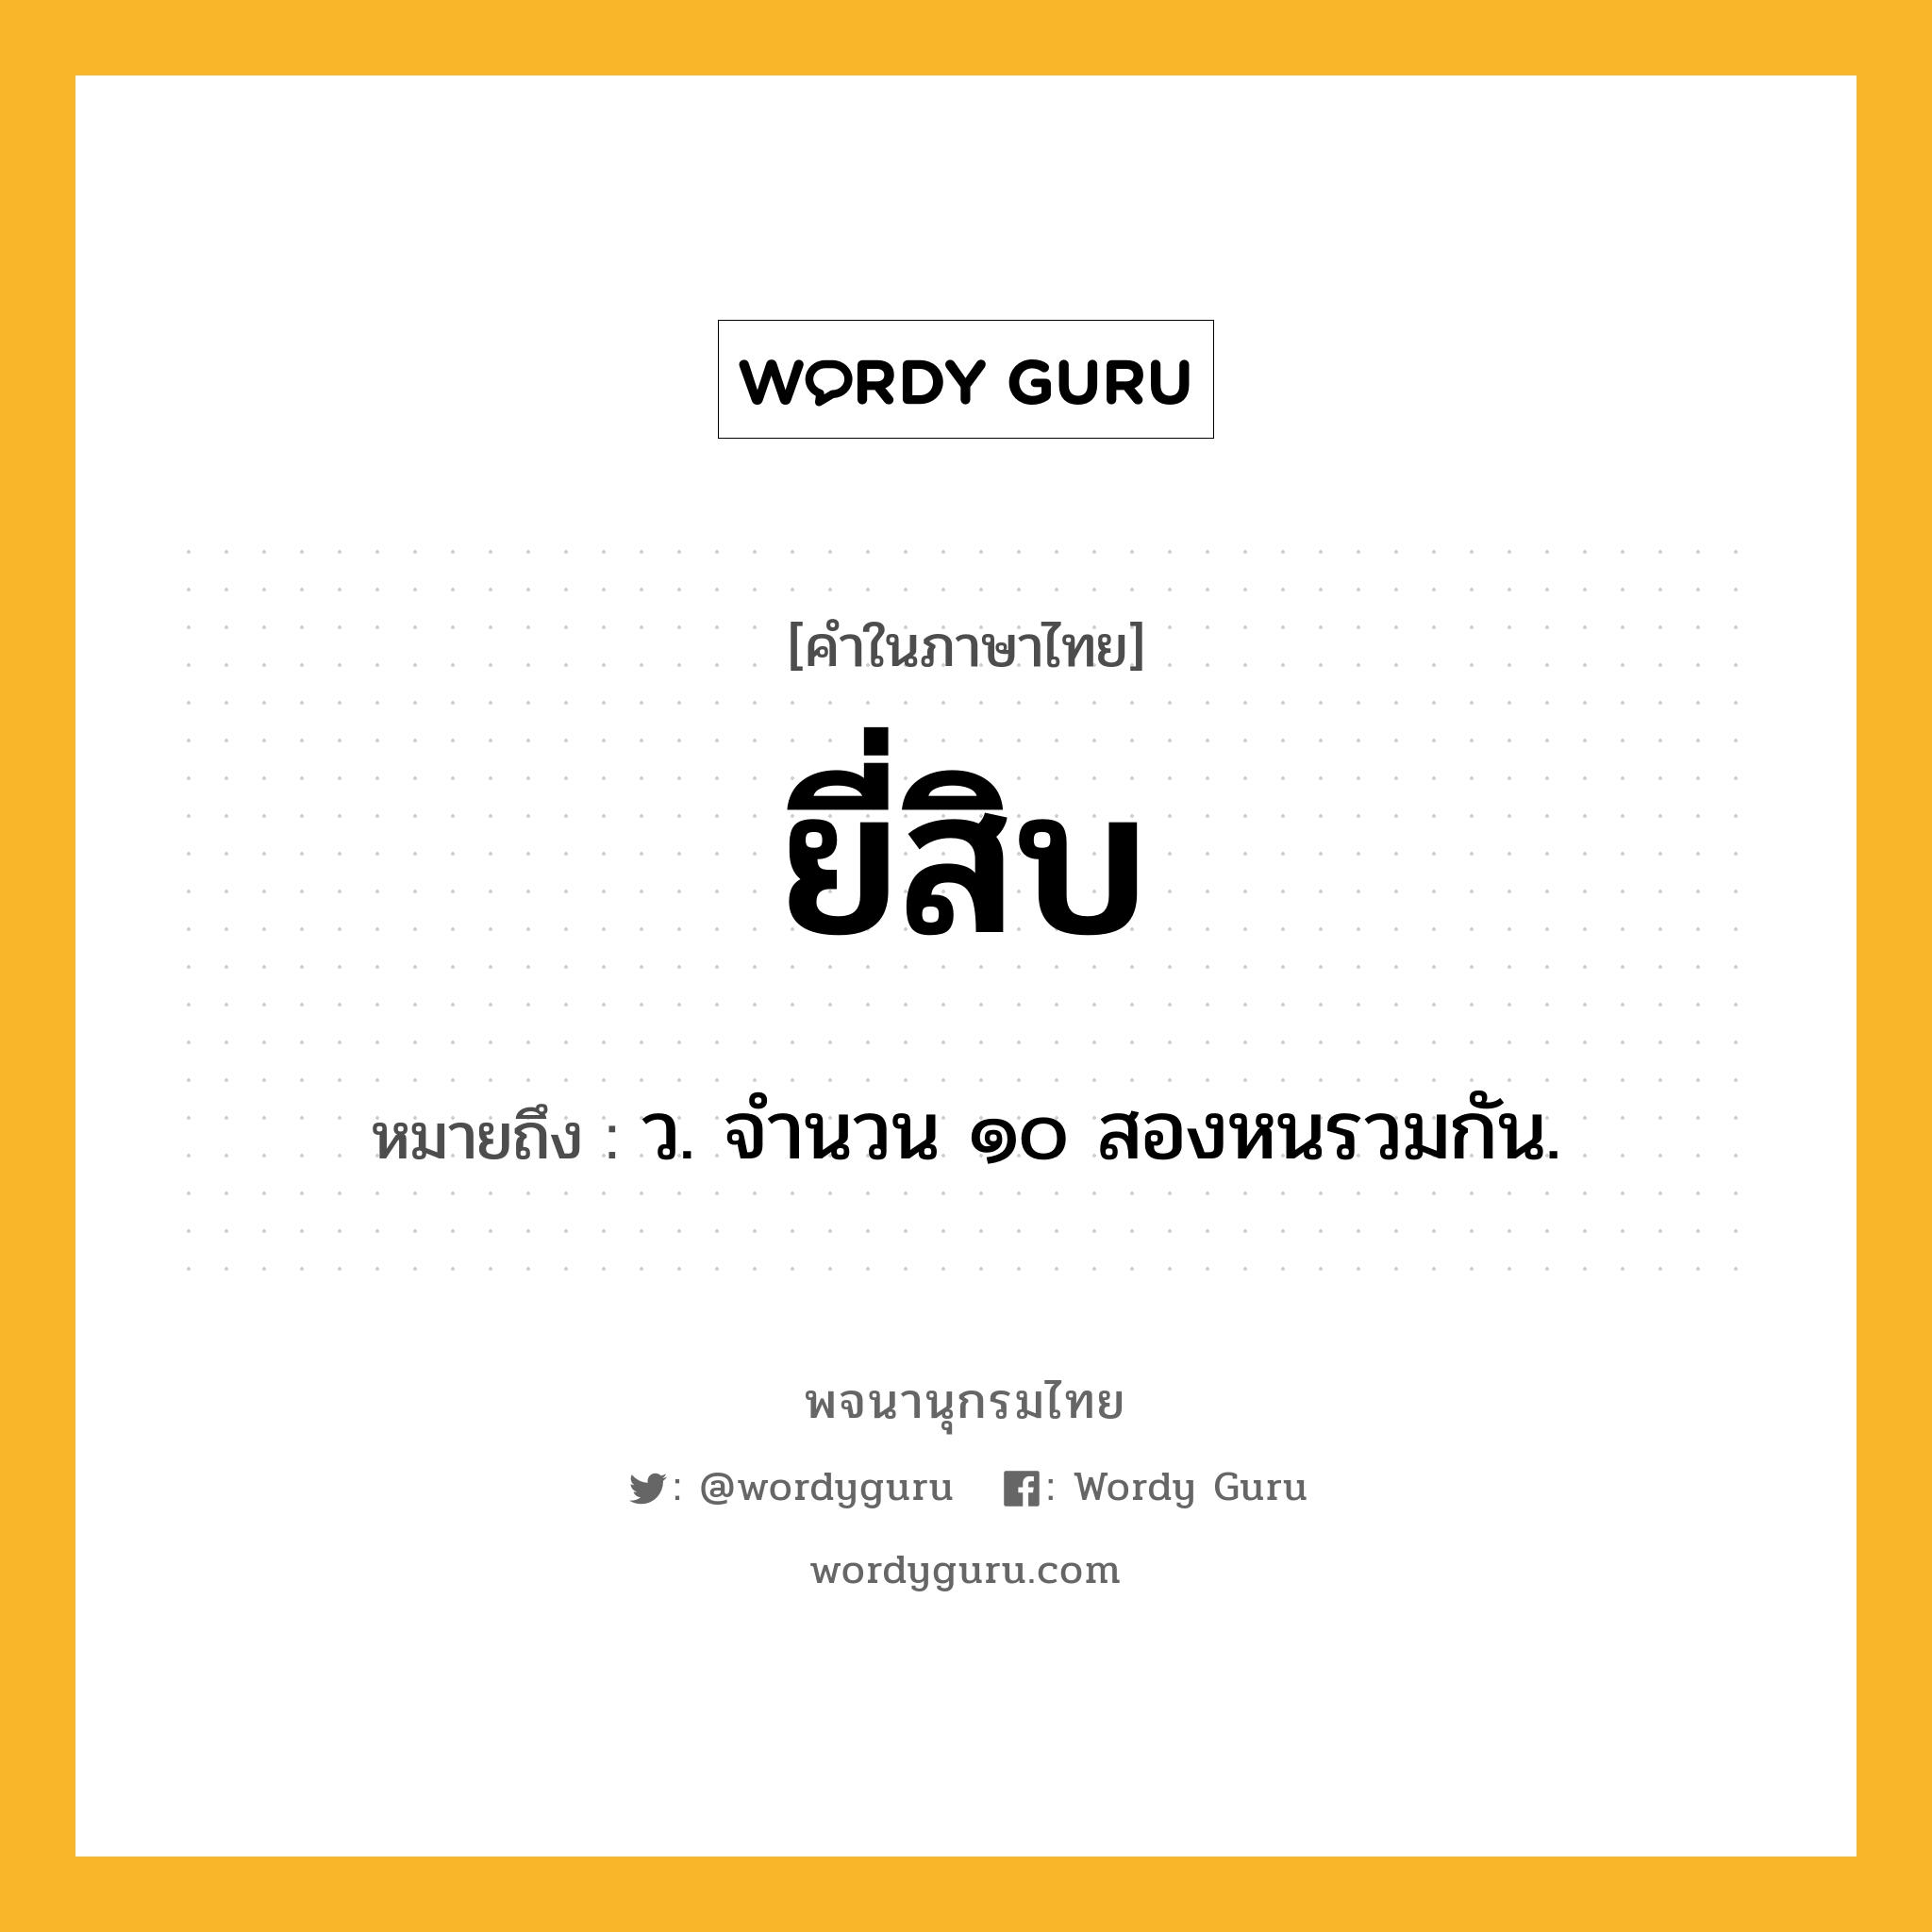 ยี่สิบ ความหมาย หมายถึงอะไร?, คำในภาษาไทย ยี่สิบ หมายถึง ว. จํานวน ๑๐ สองหนรวมกัน.